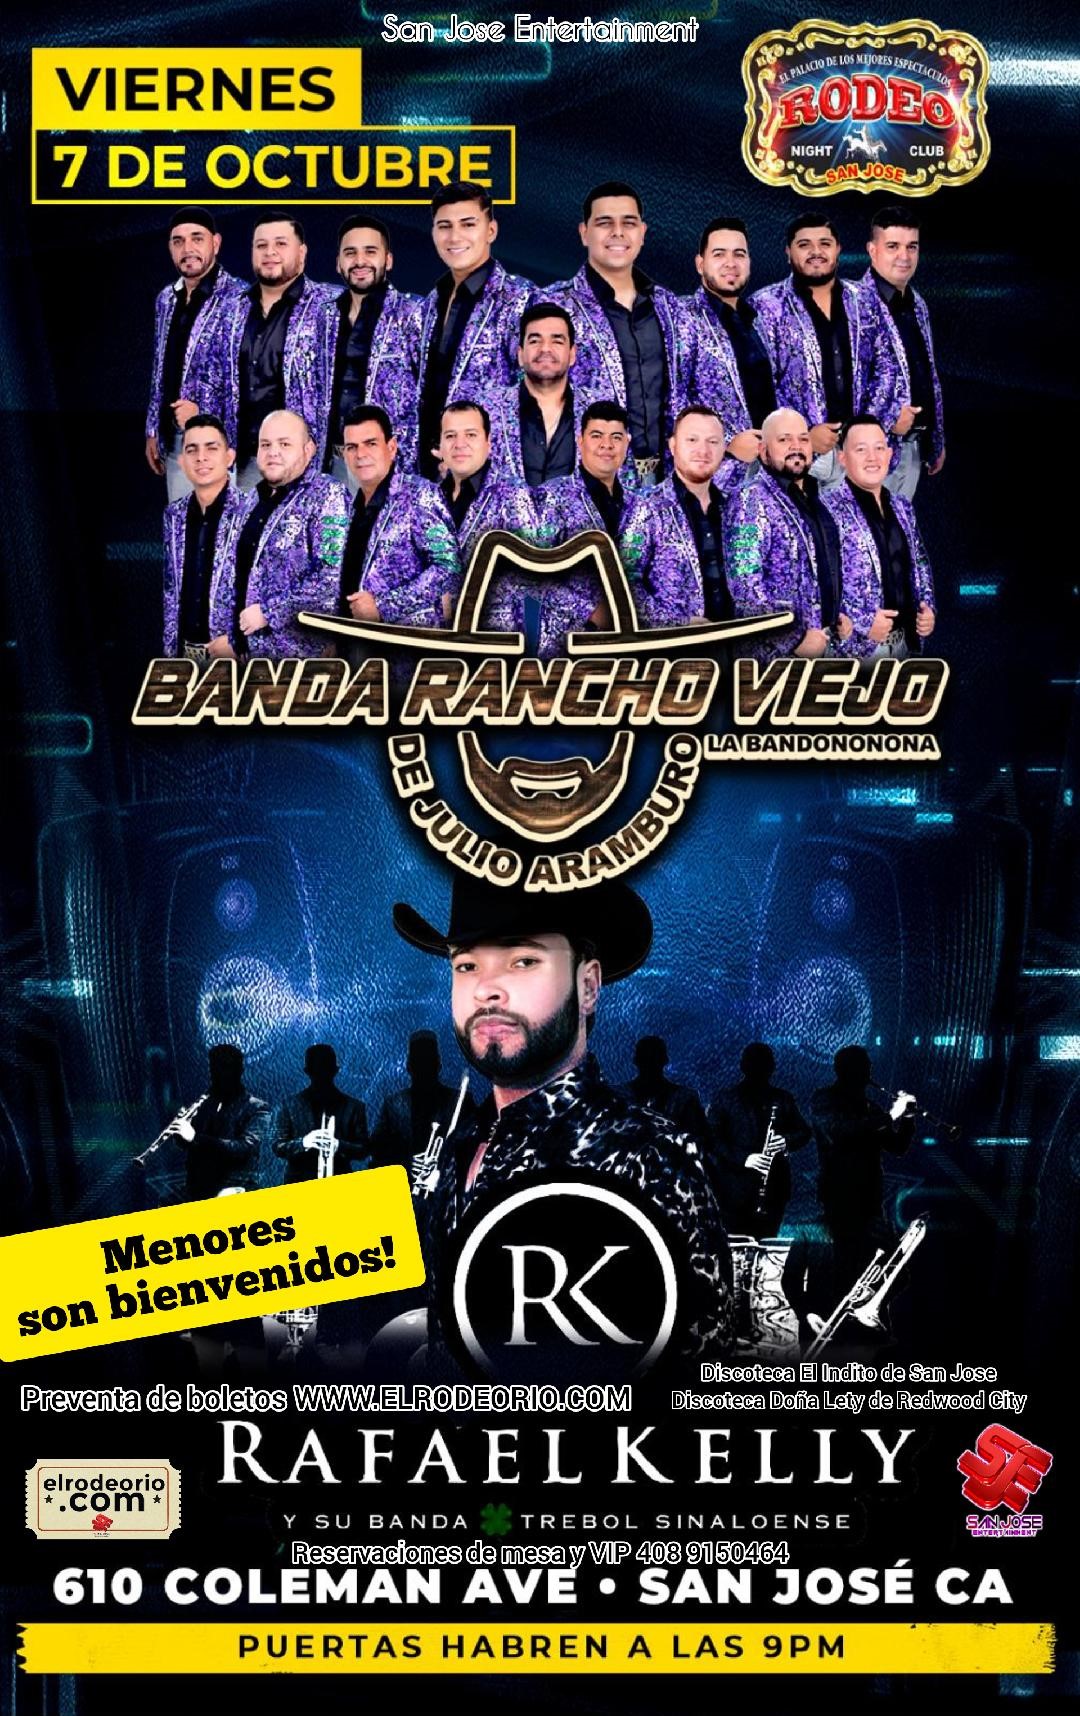 Banda Rancho Viejo,Rafael Kelly y Dubai Norteño Banda  on Oct 07, 21:00@Club Rodeo - Buy tickets and Get information on elrodeorio.com sanjoseentertainment